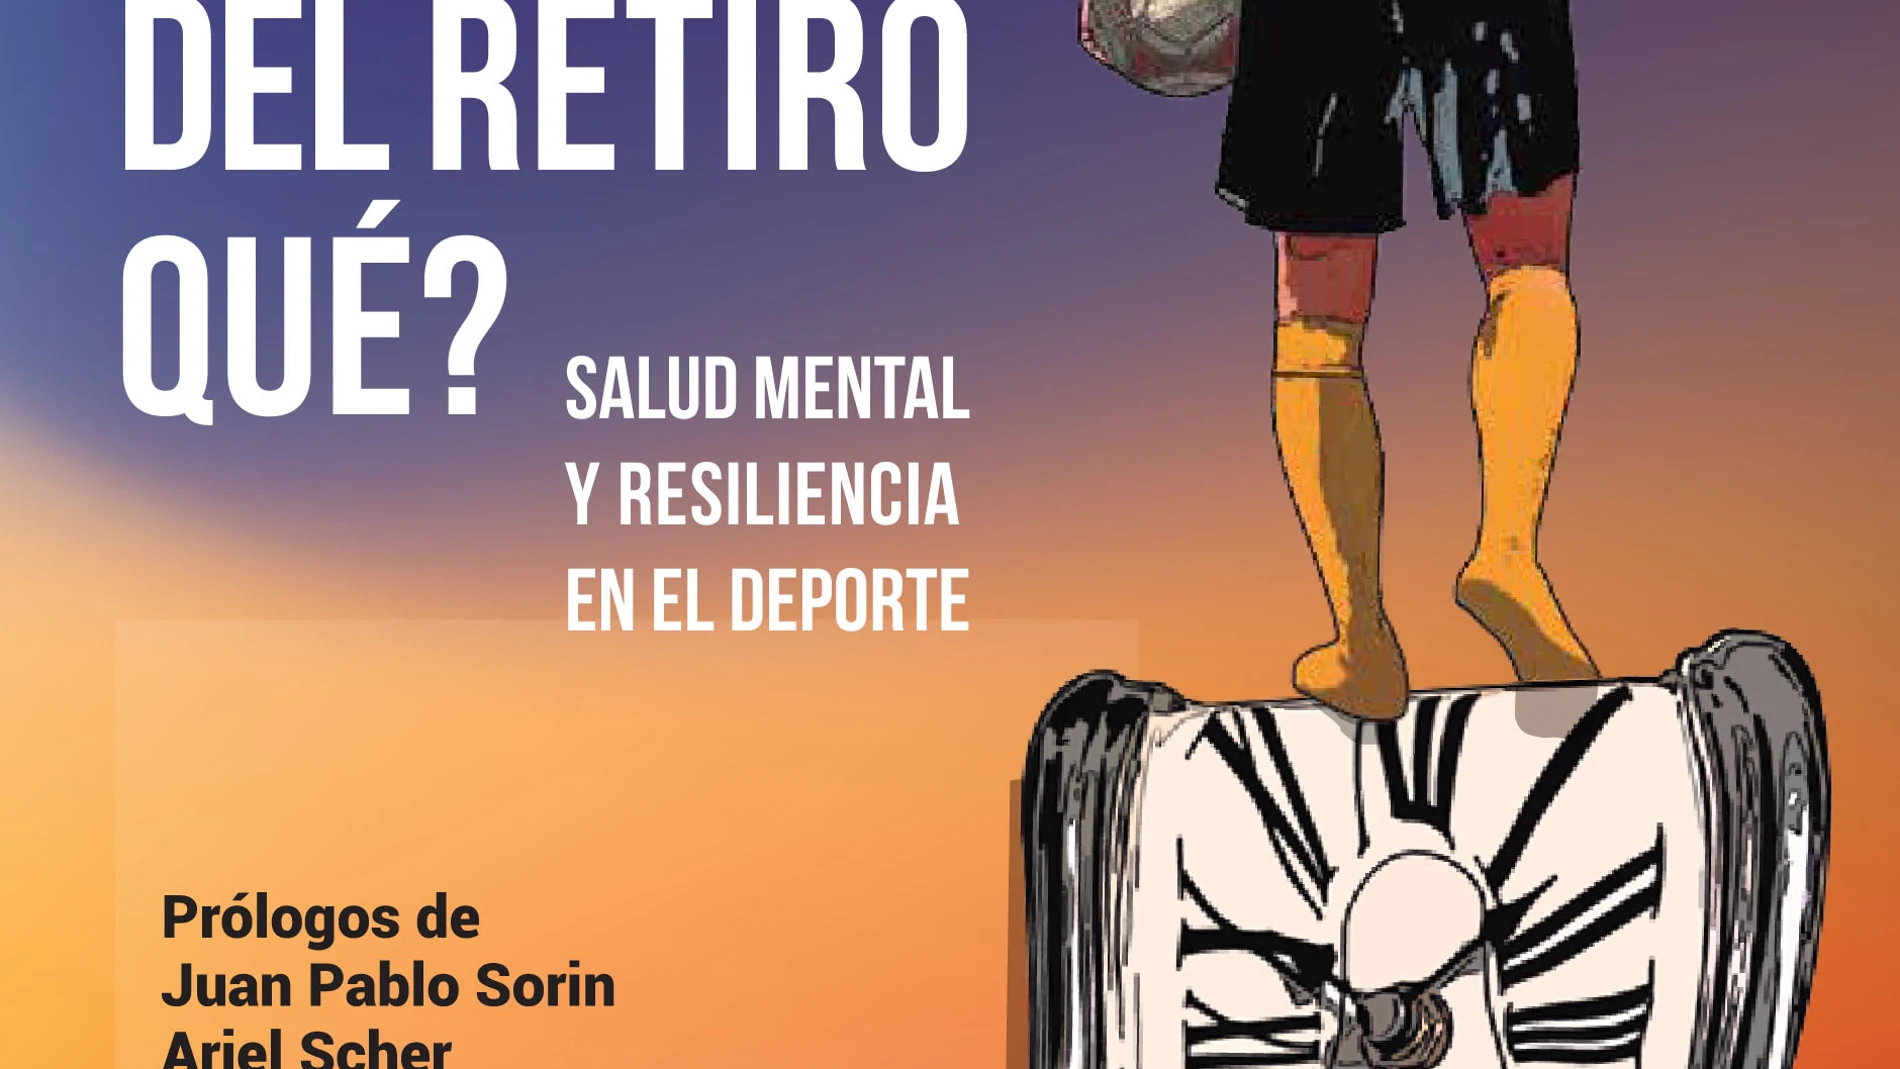 Portada del Libro "¿Y después del retiro qué? del psicólogo deportivo Marcelo Roffé